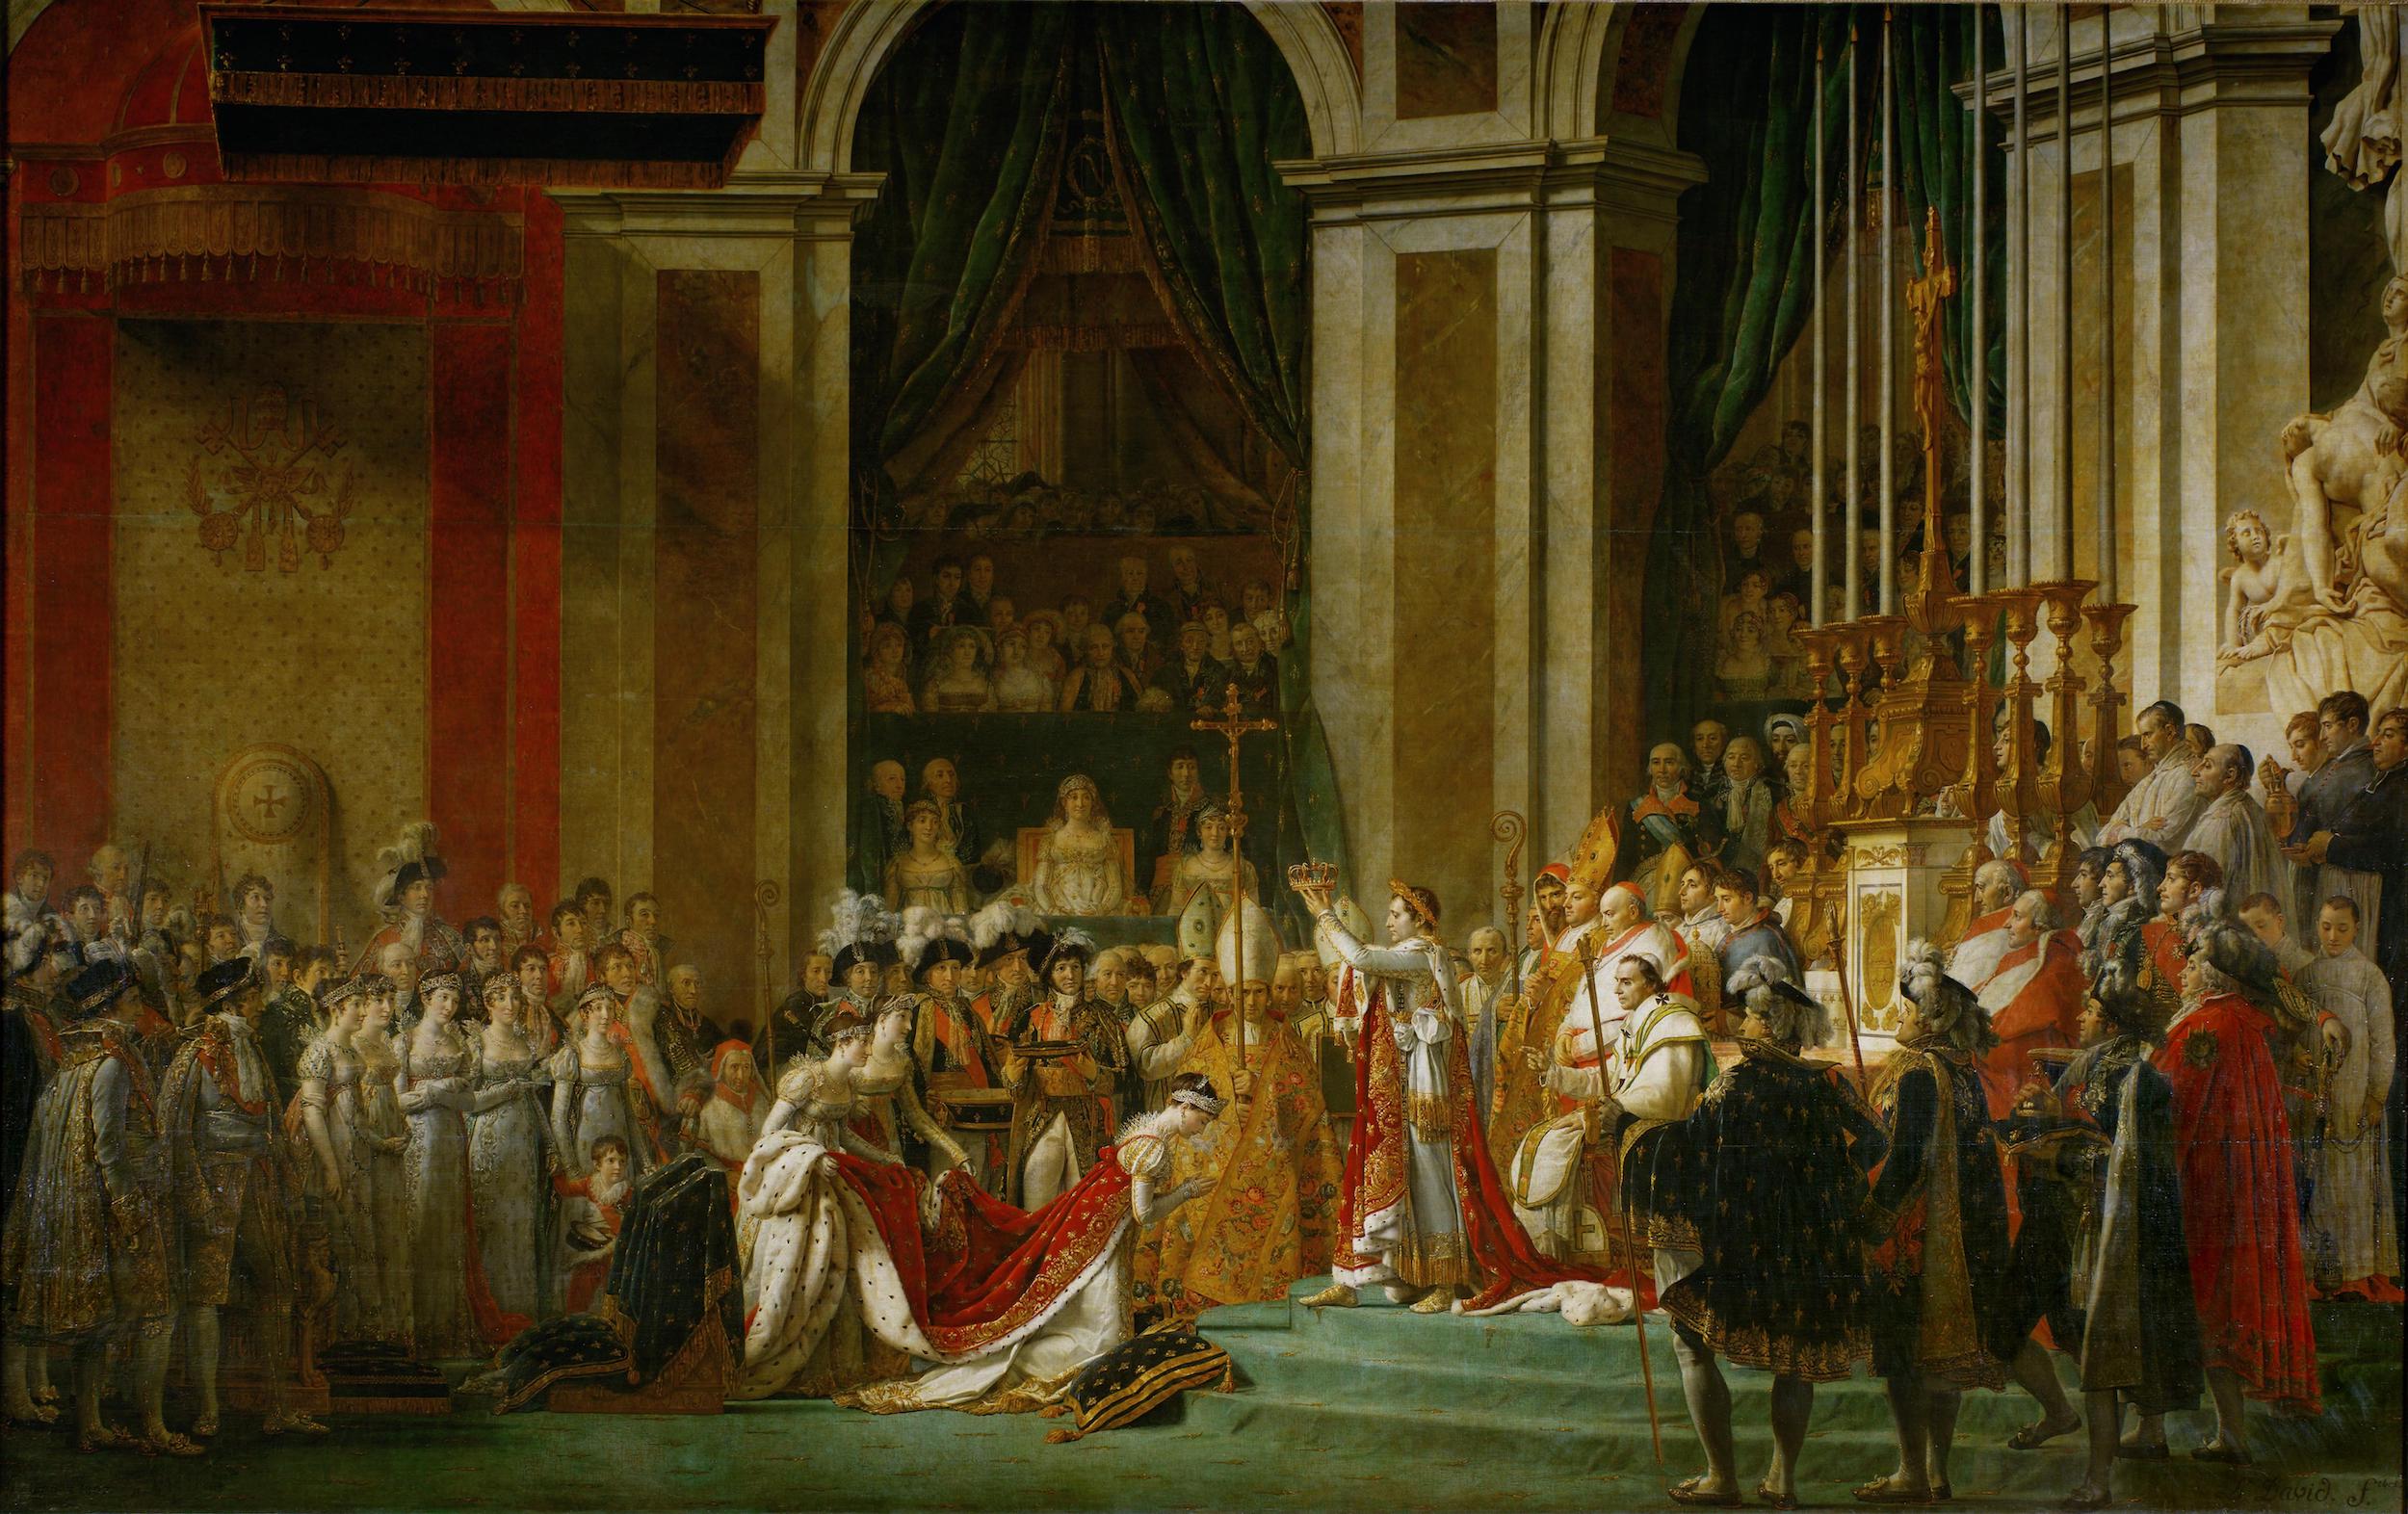 Die Krönung des Kaisers Napoleon I. und der Kaiserin Joséphine by Jacques-Louis David - 1806-1807 - 6,21 x 9,79 m Musée du Louvre